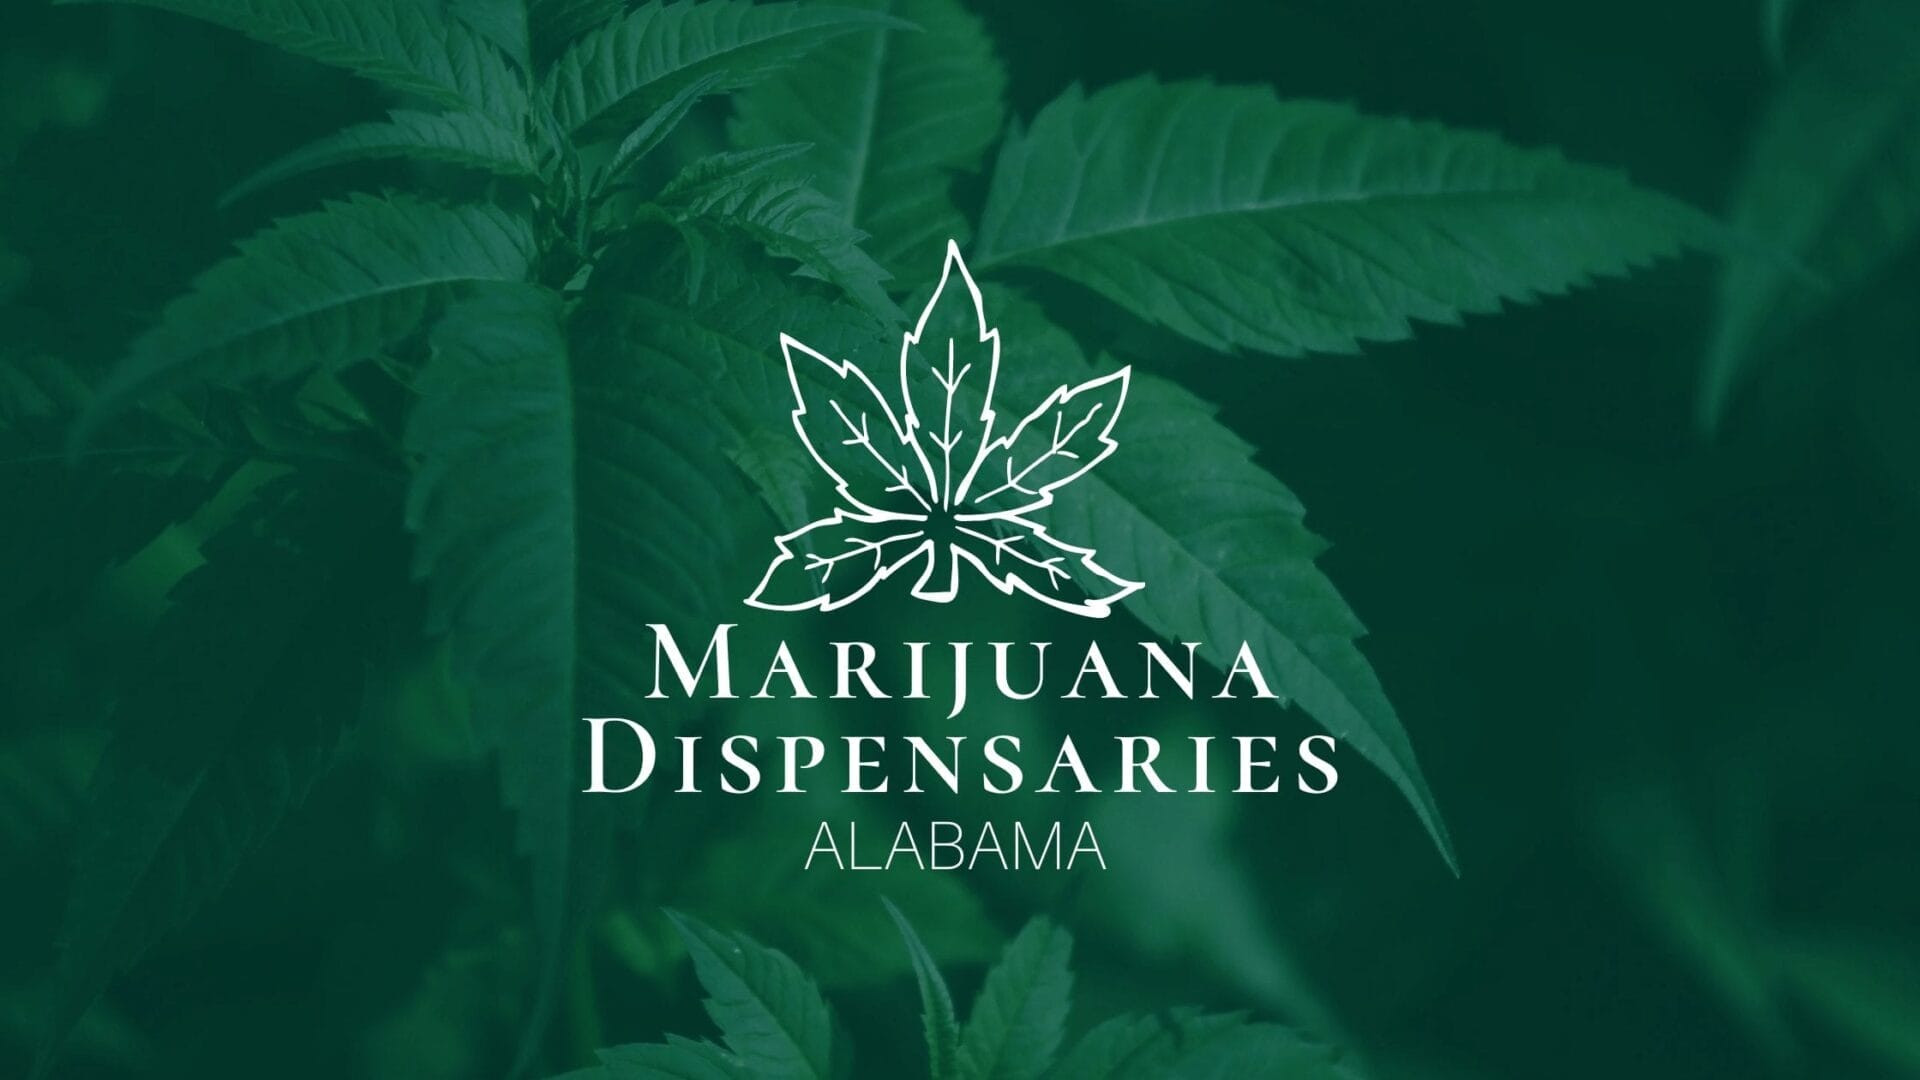 Marijuana Dispensaries in Alabama